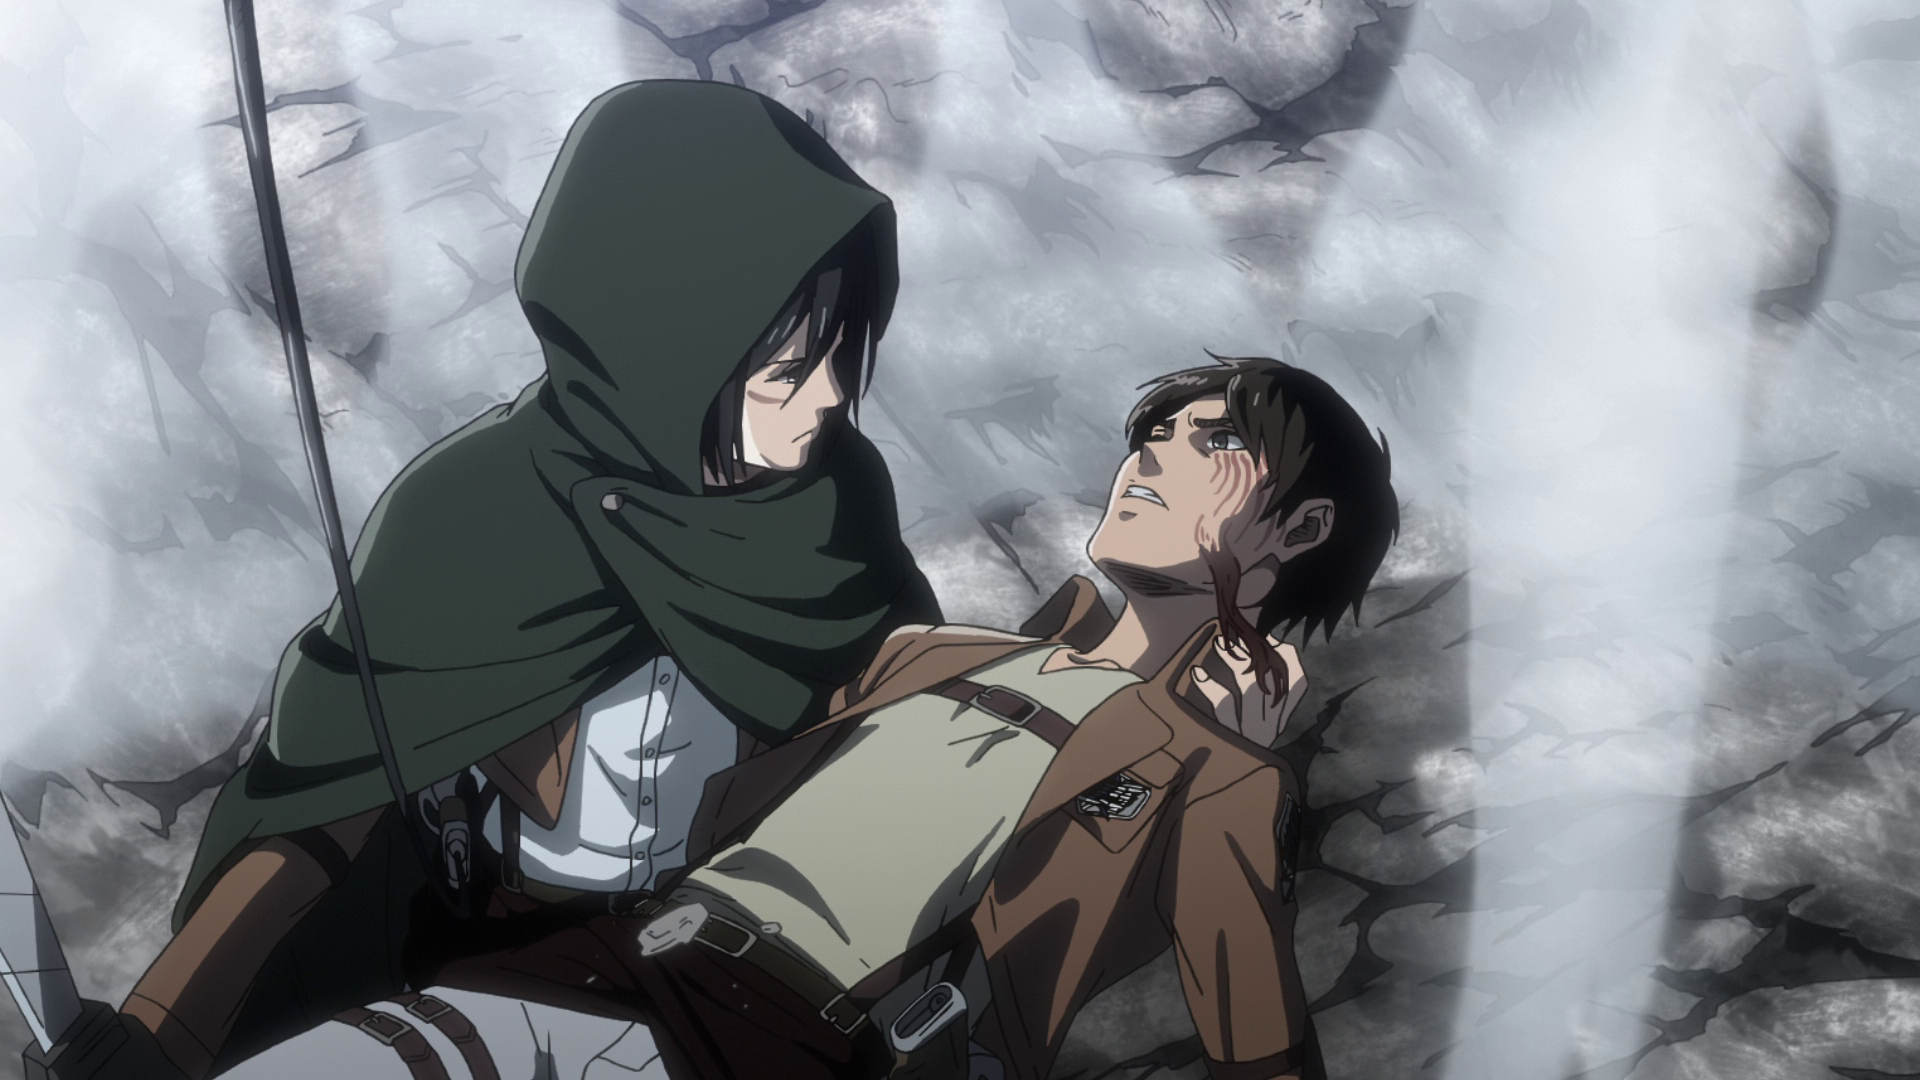 Jean e Mikasa ficaram juntos no final de Attack on Titan? #animesbras